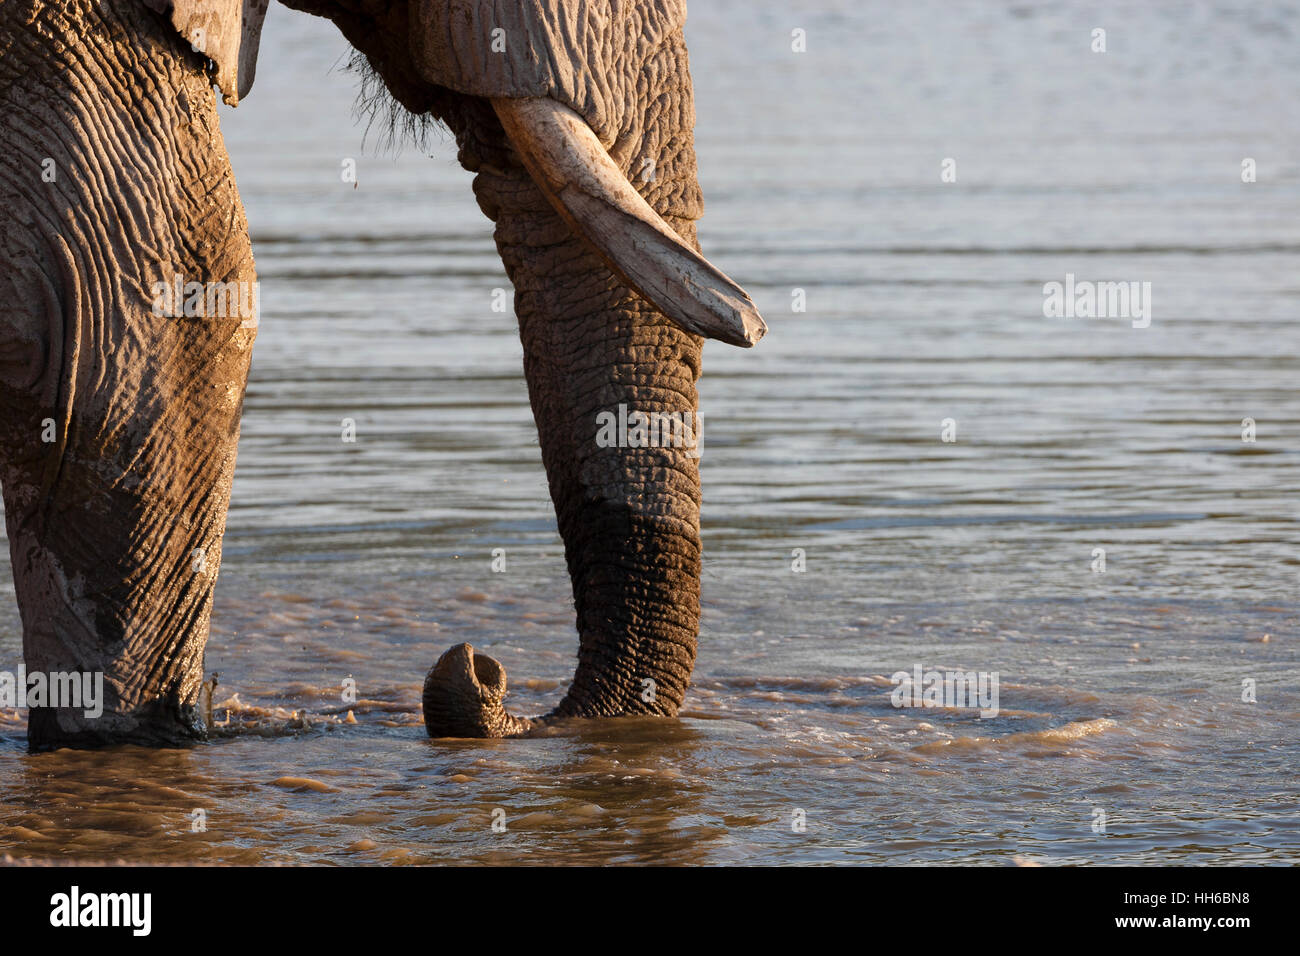 Etosha National Park, Namibia. African elephant (Loxodonta africana) trunk detail. Stock Photo